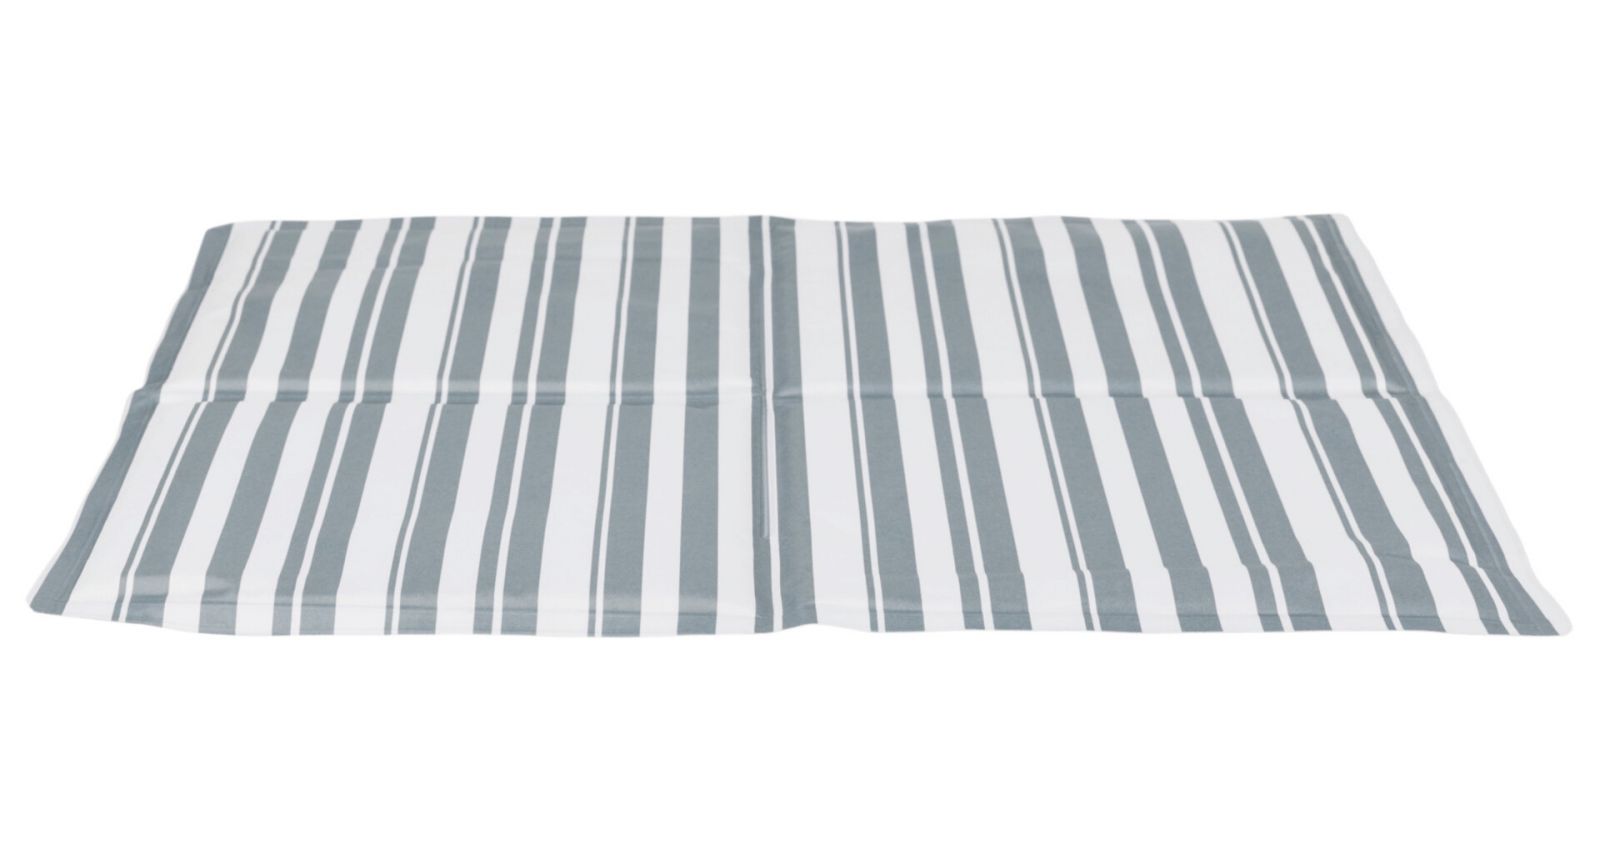 Chladící podložka pro zvířata, proužkovaná 65 x 50 cm bílo/šedá TRIXIE